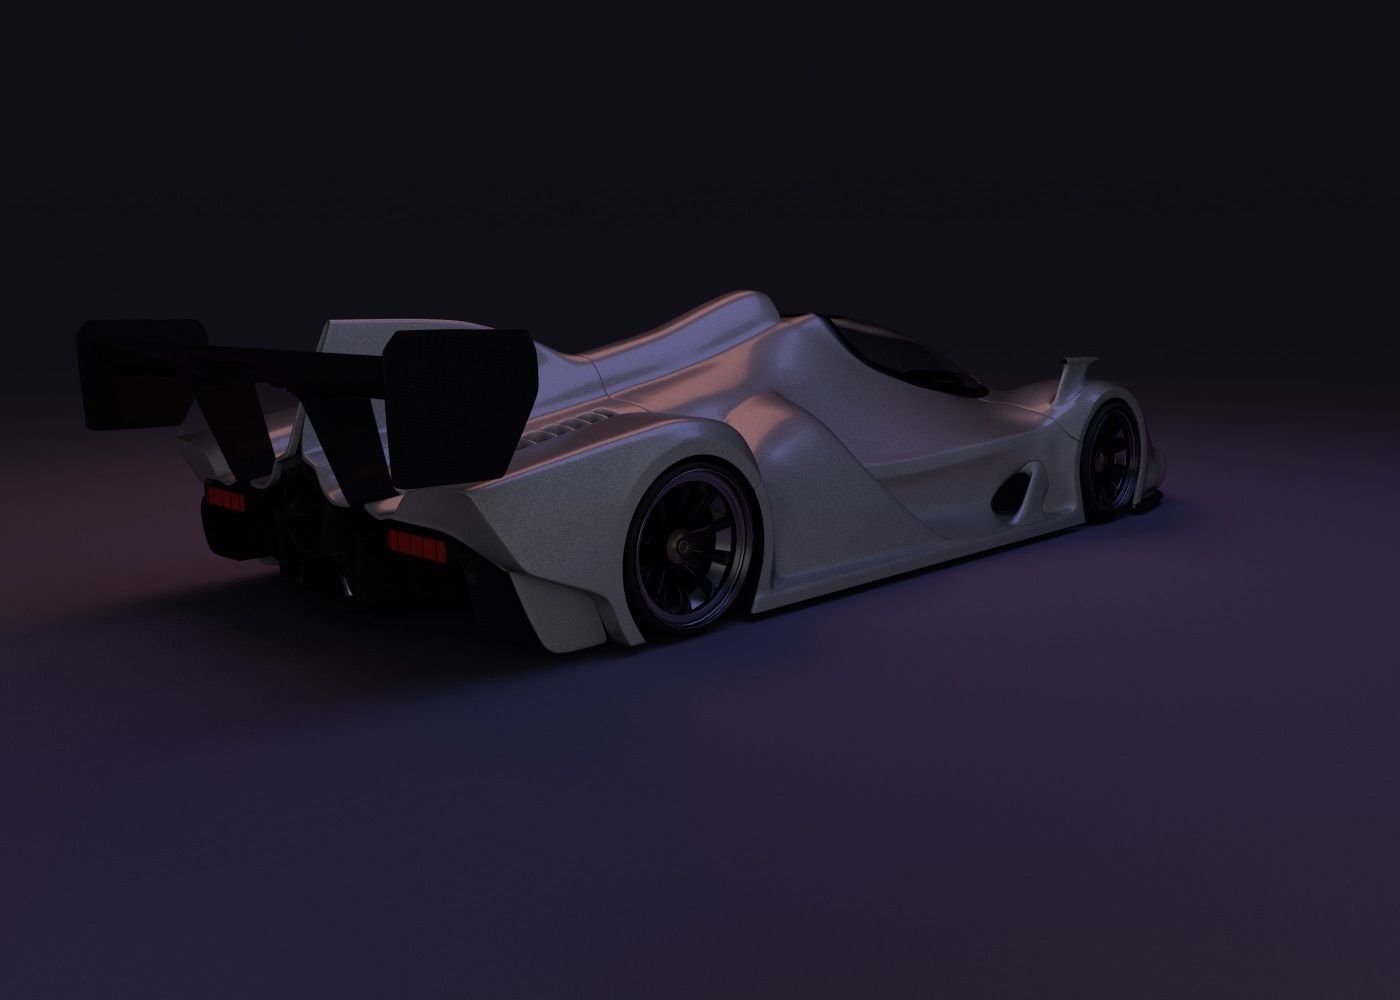 The Le mans Car 3D model